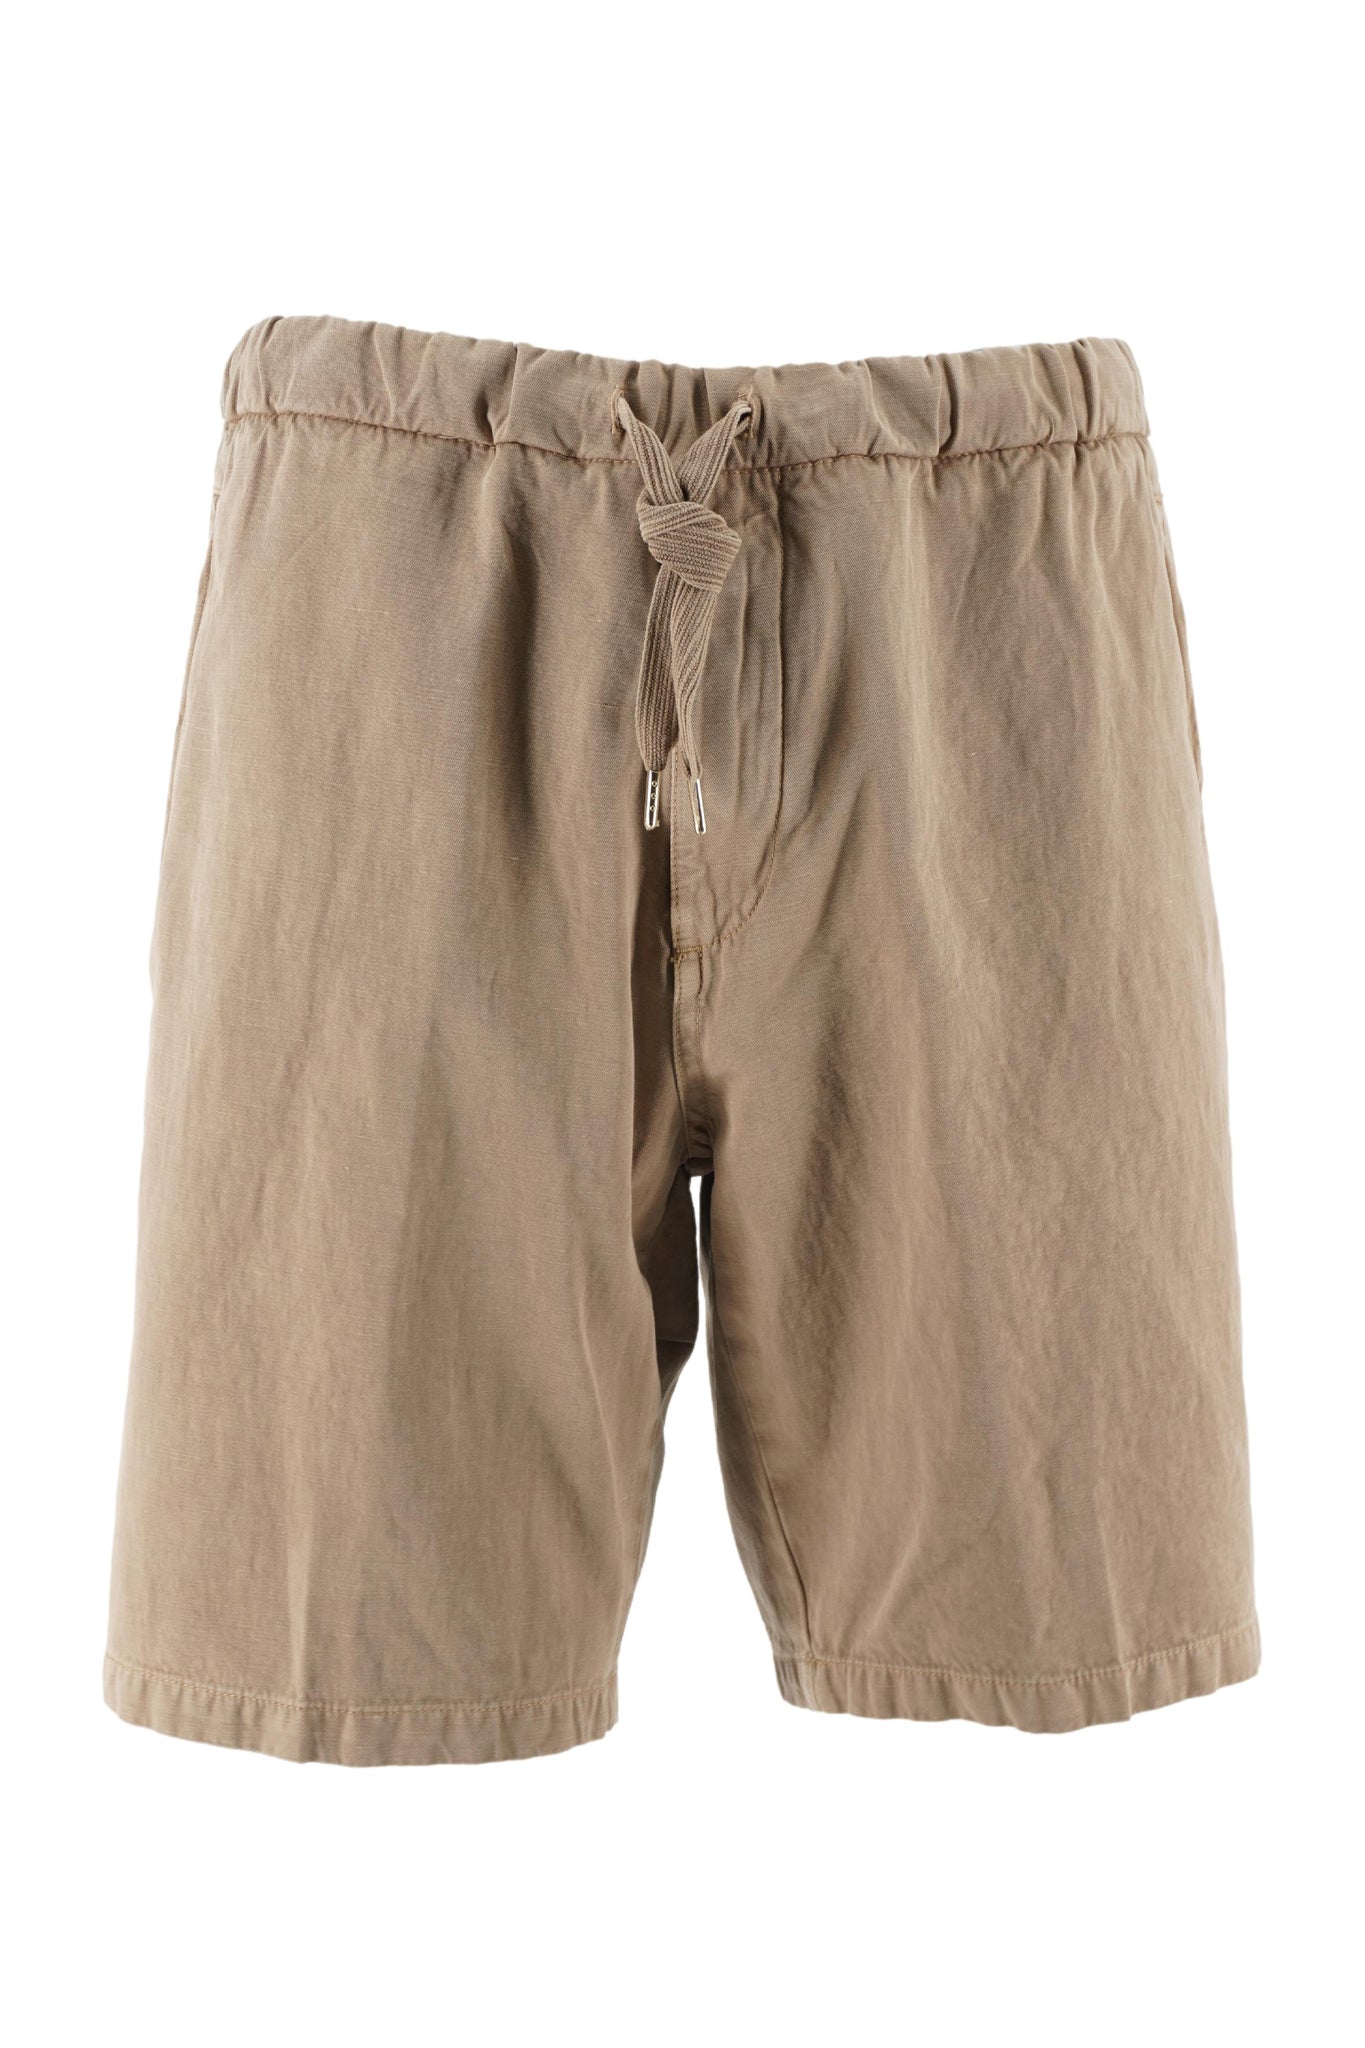 Pantaloncino Bali in Cotone e Lino / Beige - Ideal Moda